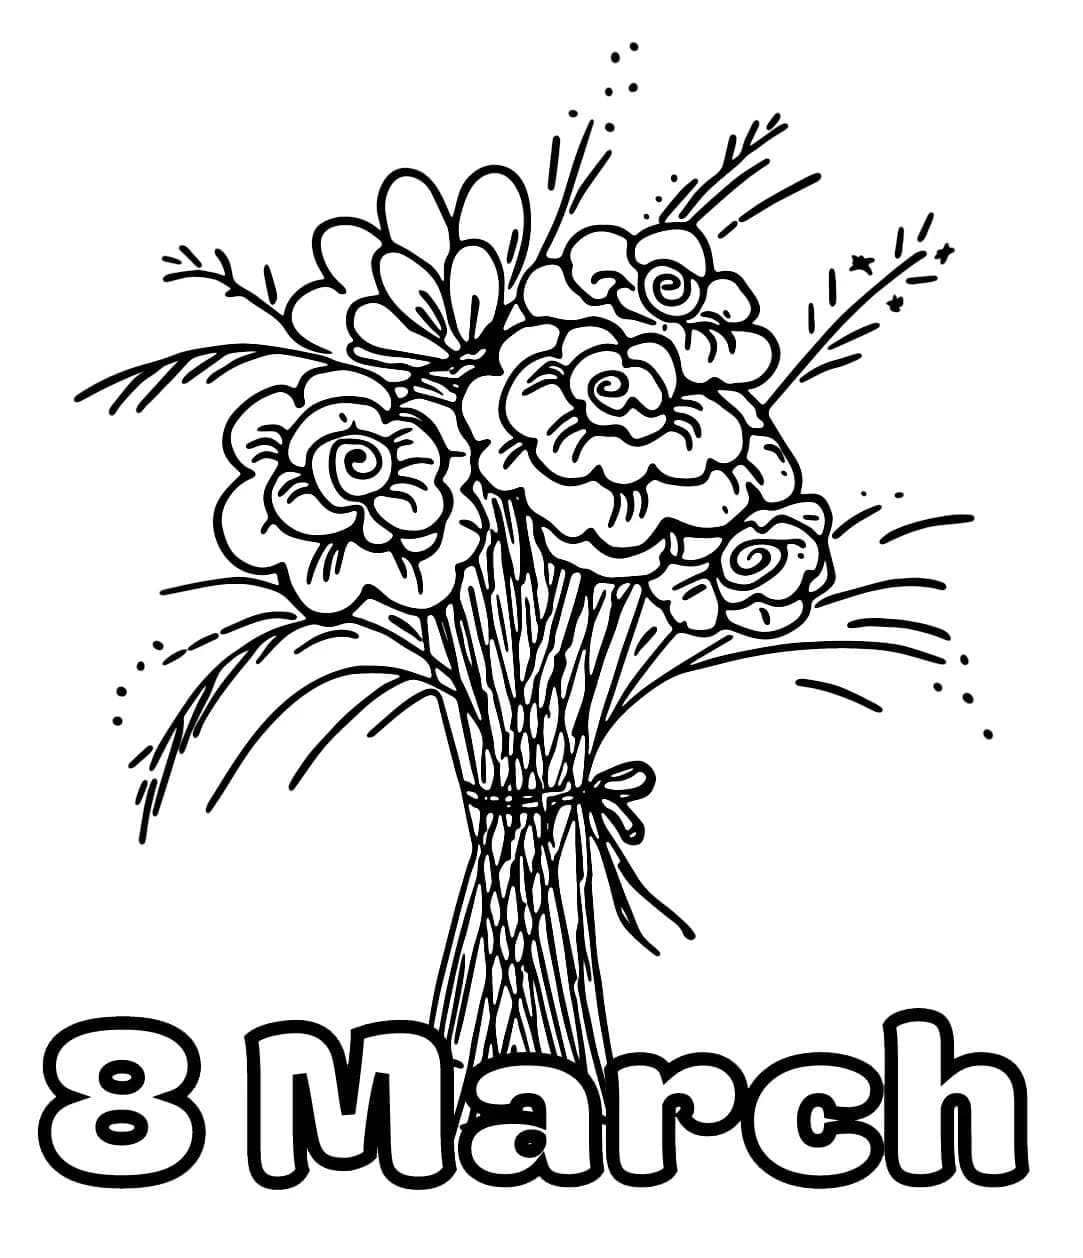 Journée Internationale de la Femme 8 Mars coloring page